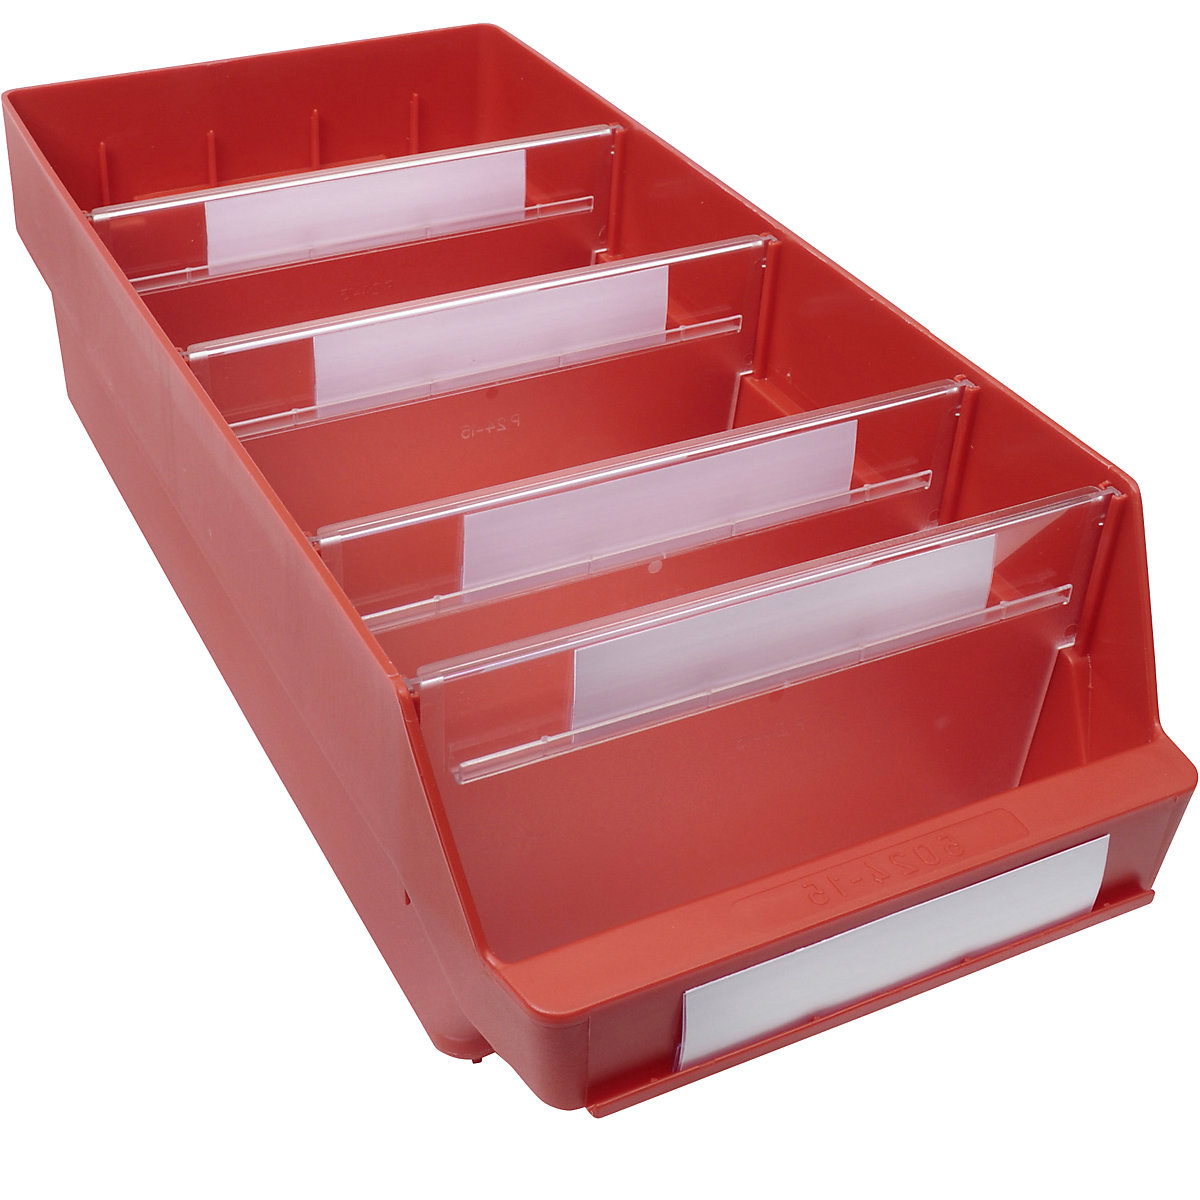 Regalkasten aus hochschlagfestem Polypropylen STEMO, rot, LxBxH 500 x 240 x 150 mm, VE 10 Stk-8